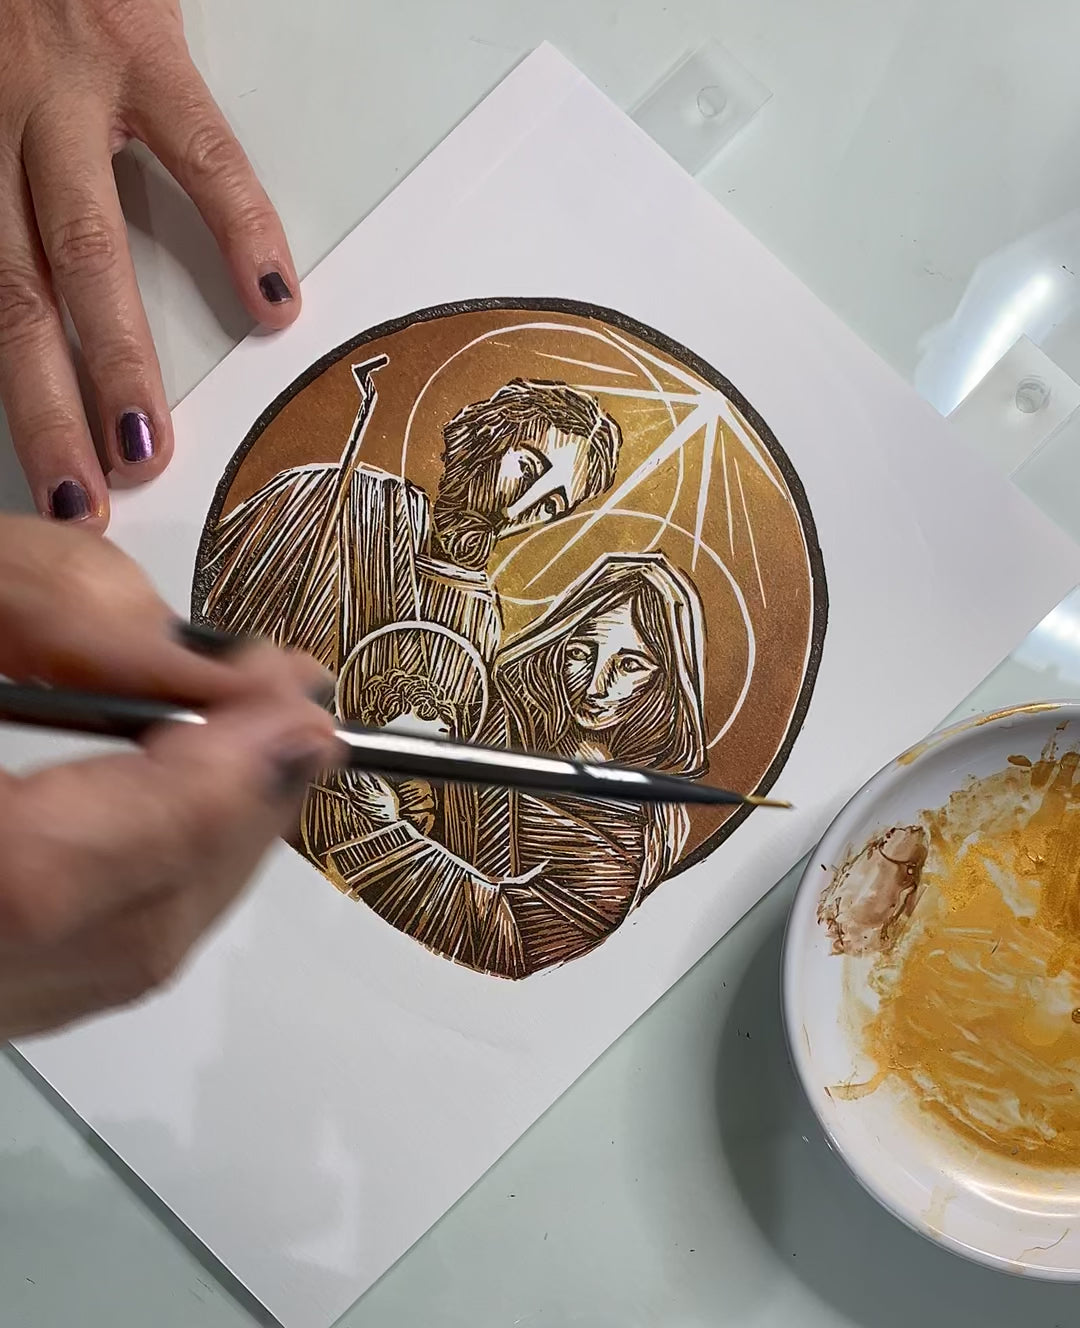 Proceso de aplicación de acuarela color oro metálico con pincel, en algunas áreas del grabado.